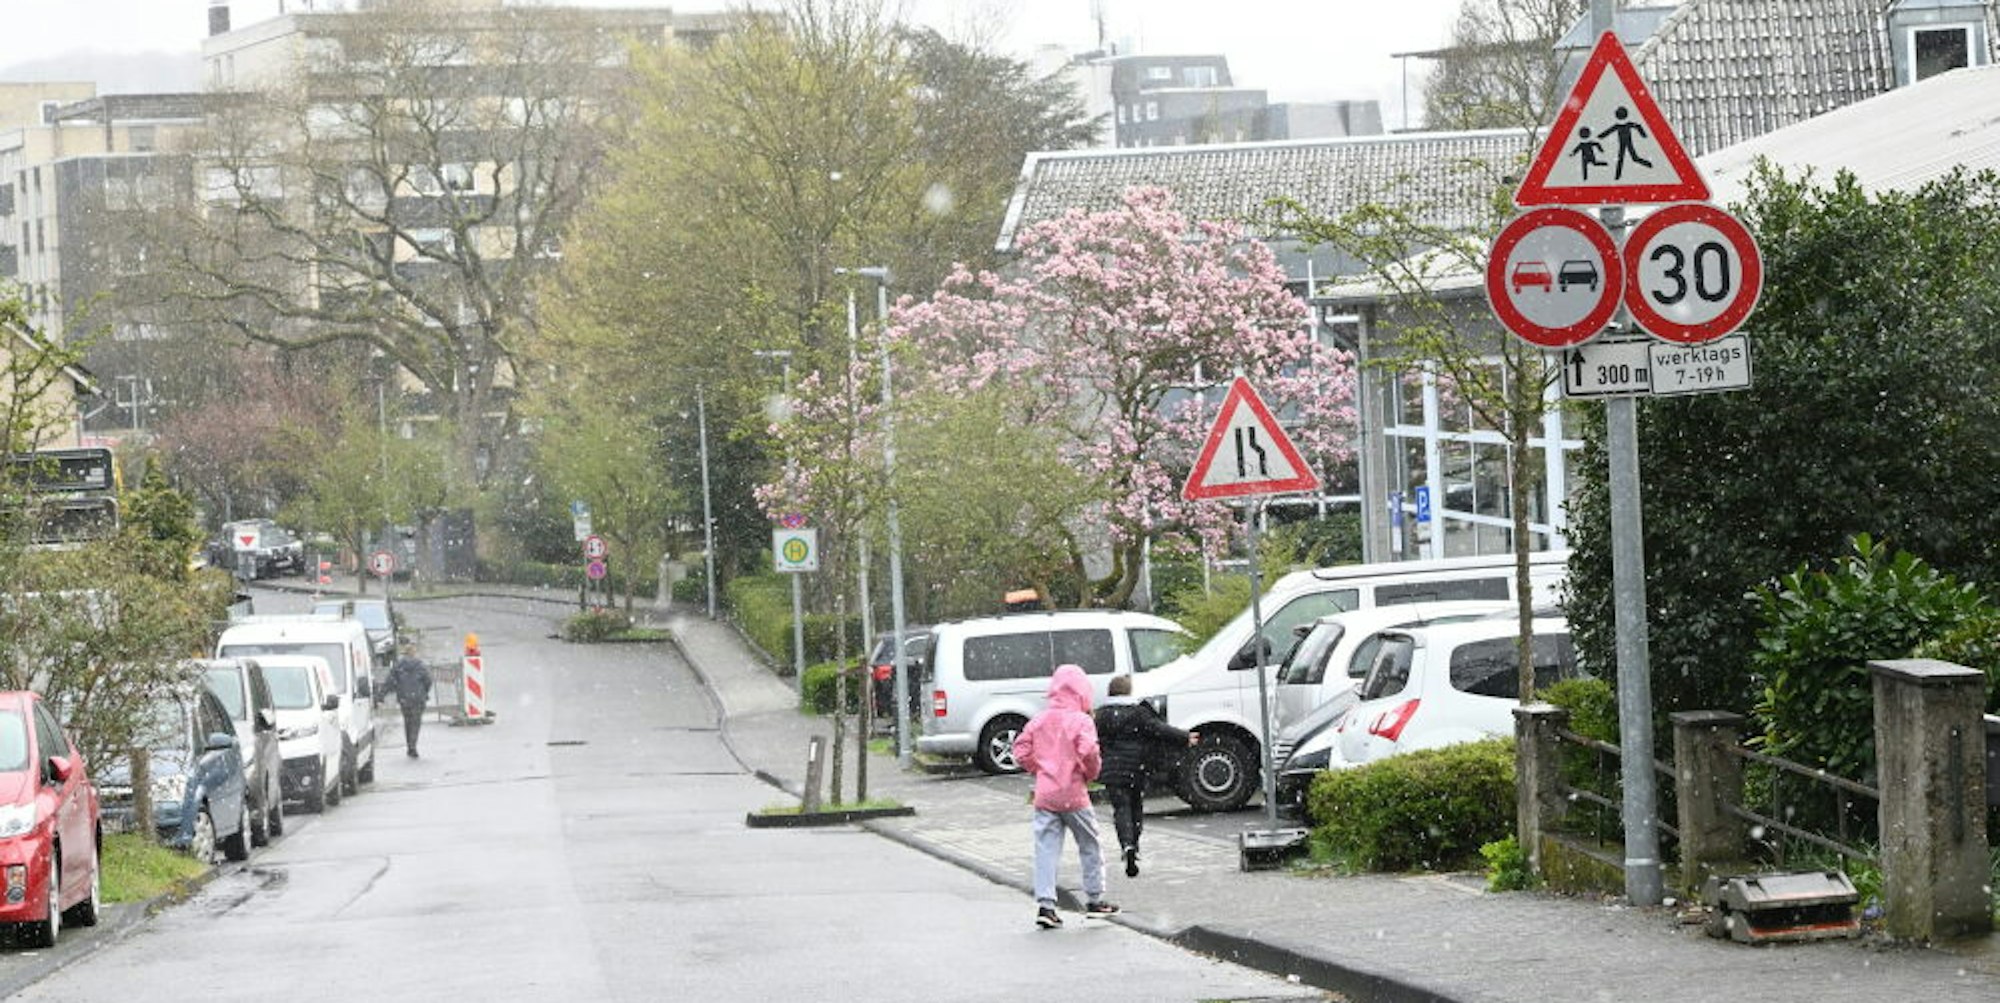 An Gladbacher Grundschulen – unser Foto zeigte die Situation an der Straße Am Broich – muss auch in den Ferien langsam gefahren werden.